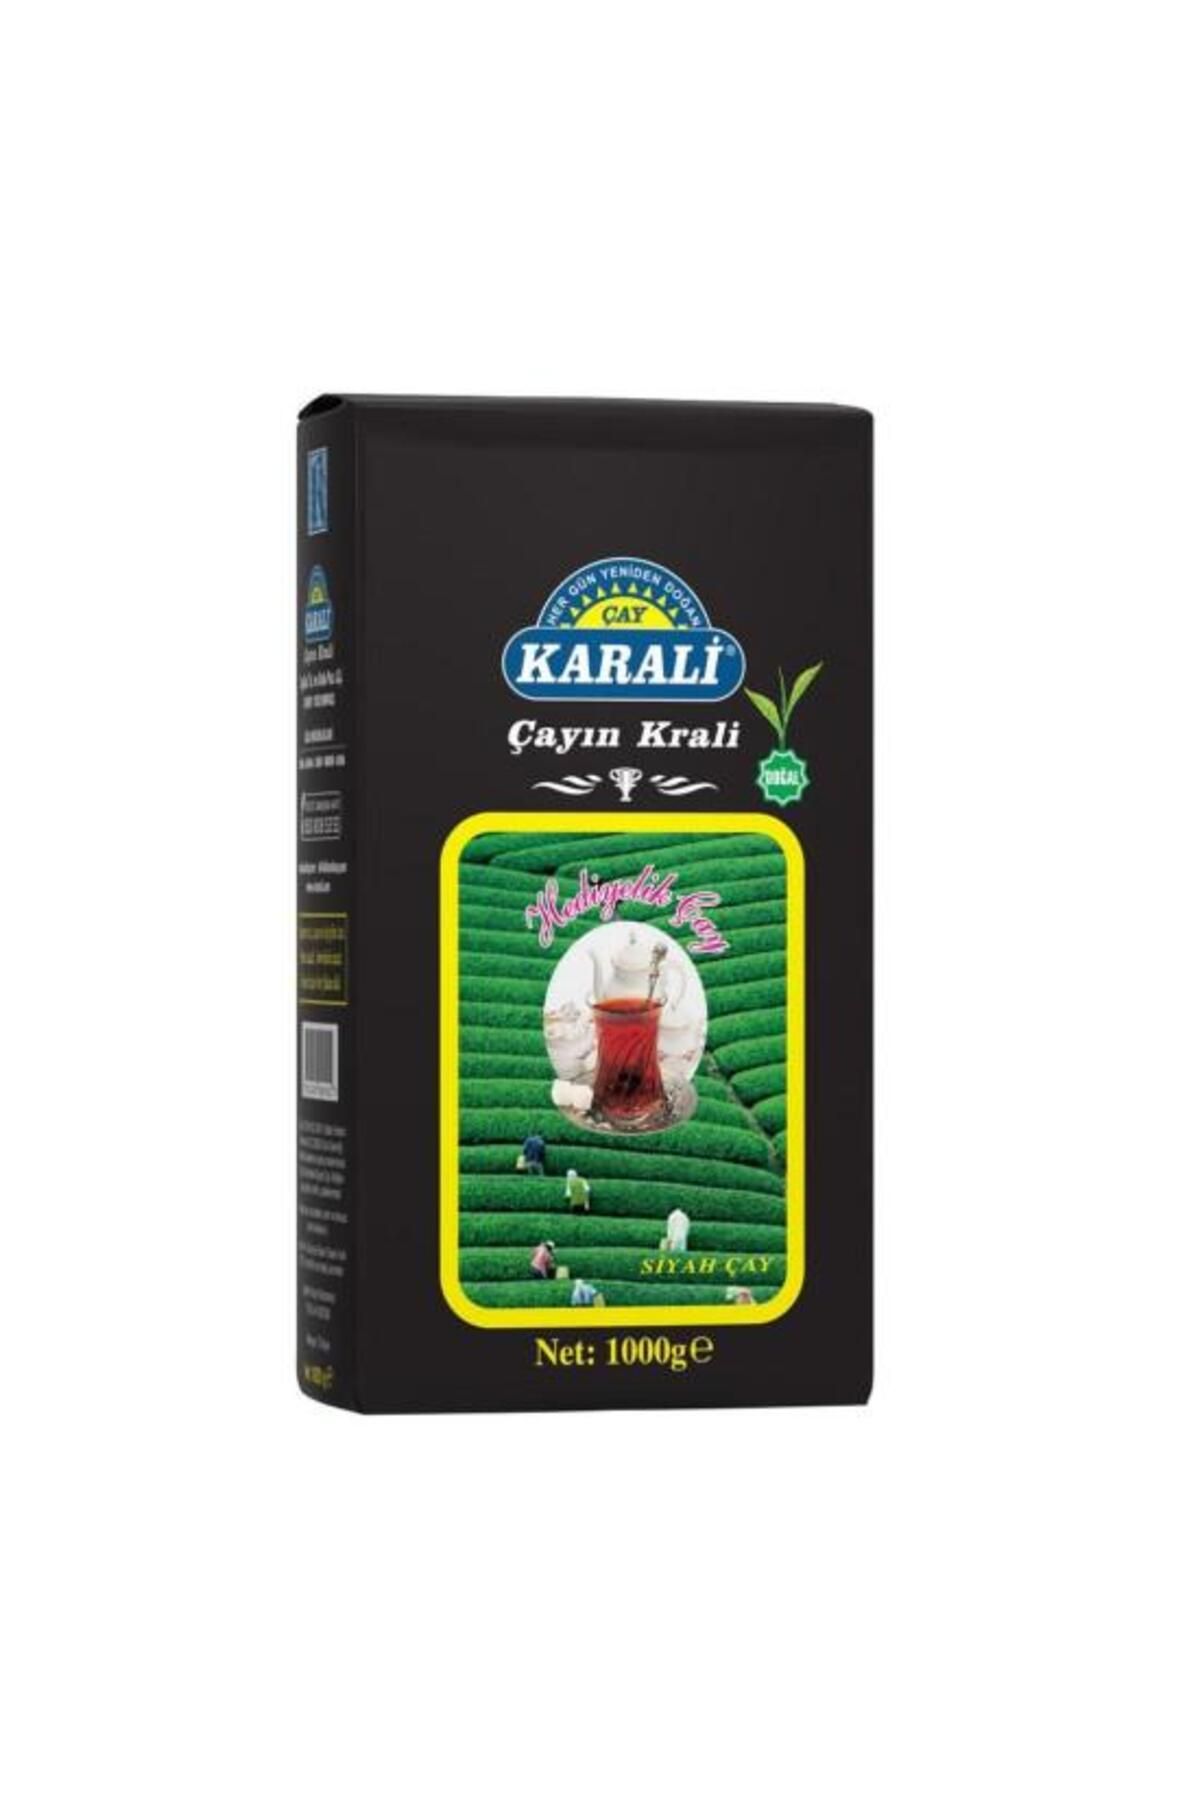 Karali Çay Karali Hediyelik Çay 1000 gr X 3 Paket